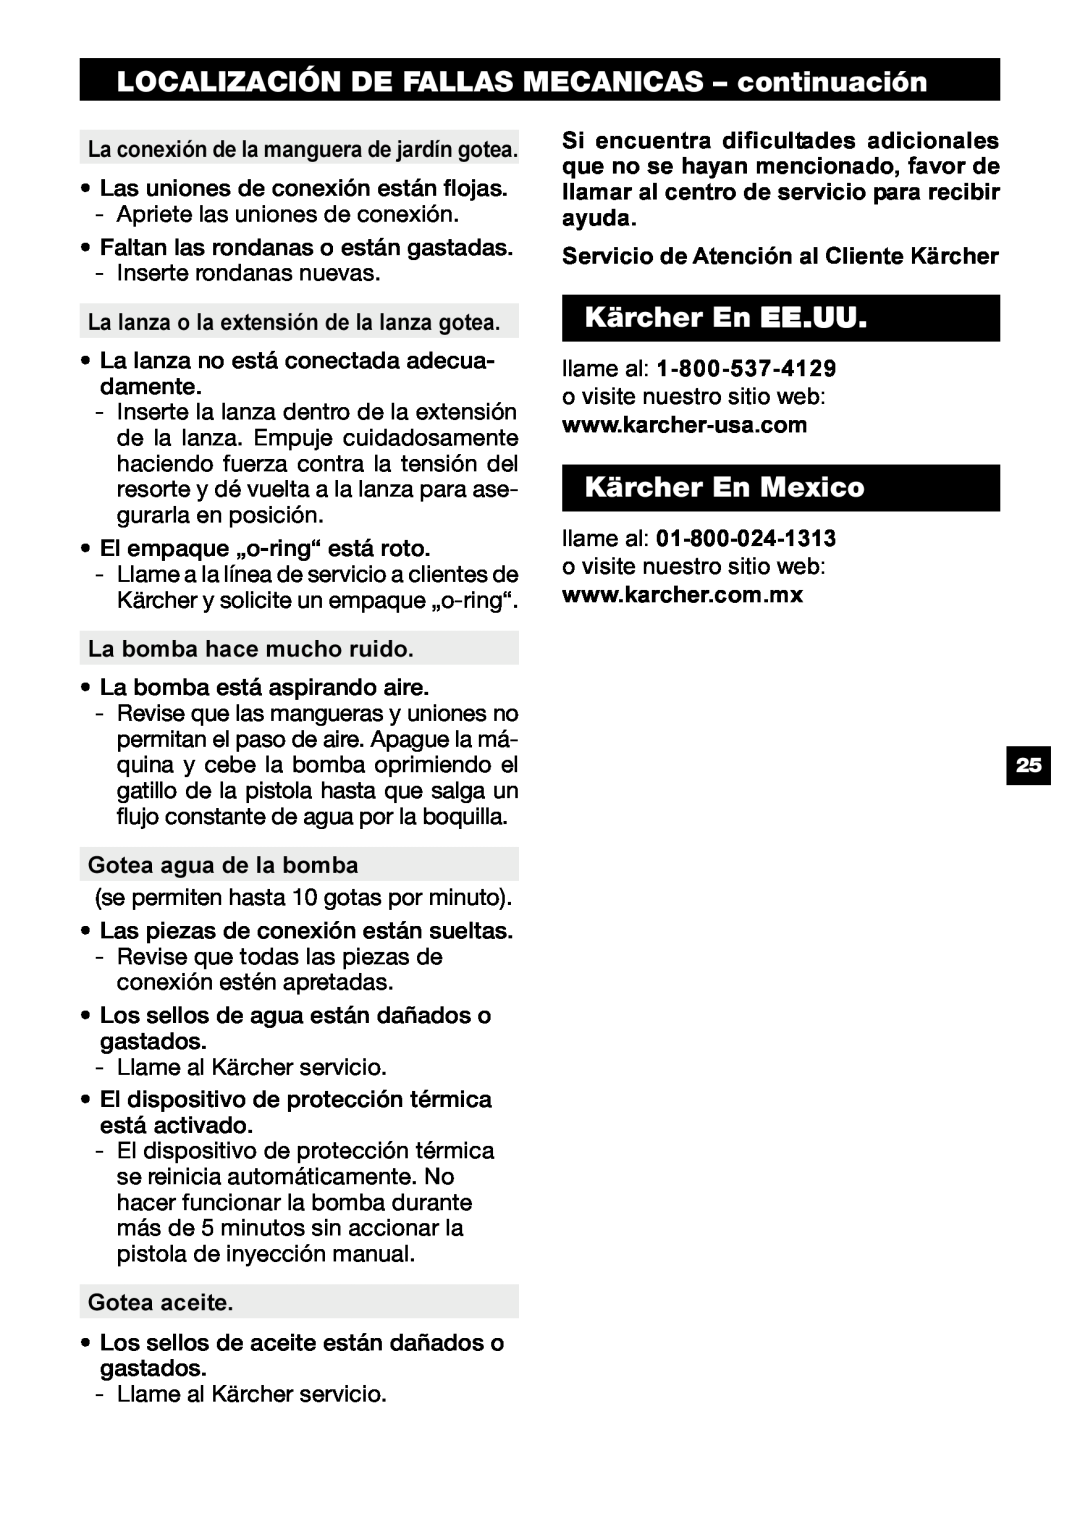 Karcher G 2500 OH manual LOCALIZACIÓN DE FALLAS MECANICAS - continuación, Kärcher En EE.UU, Kärcher En Mexico 